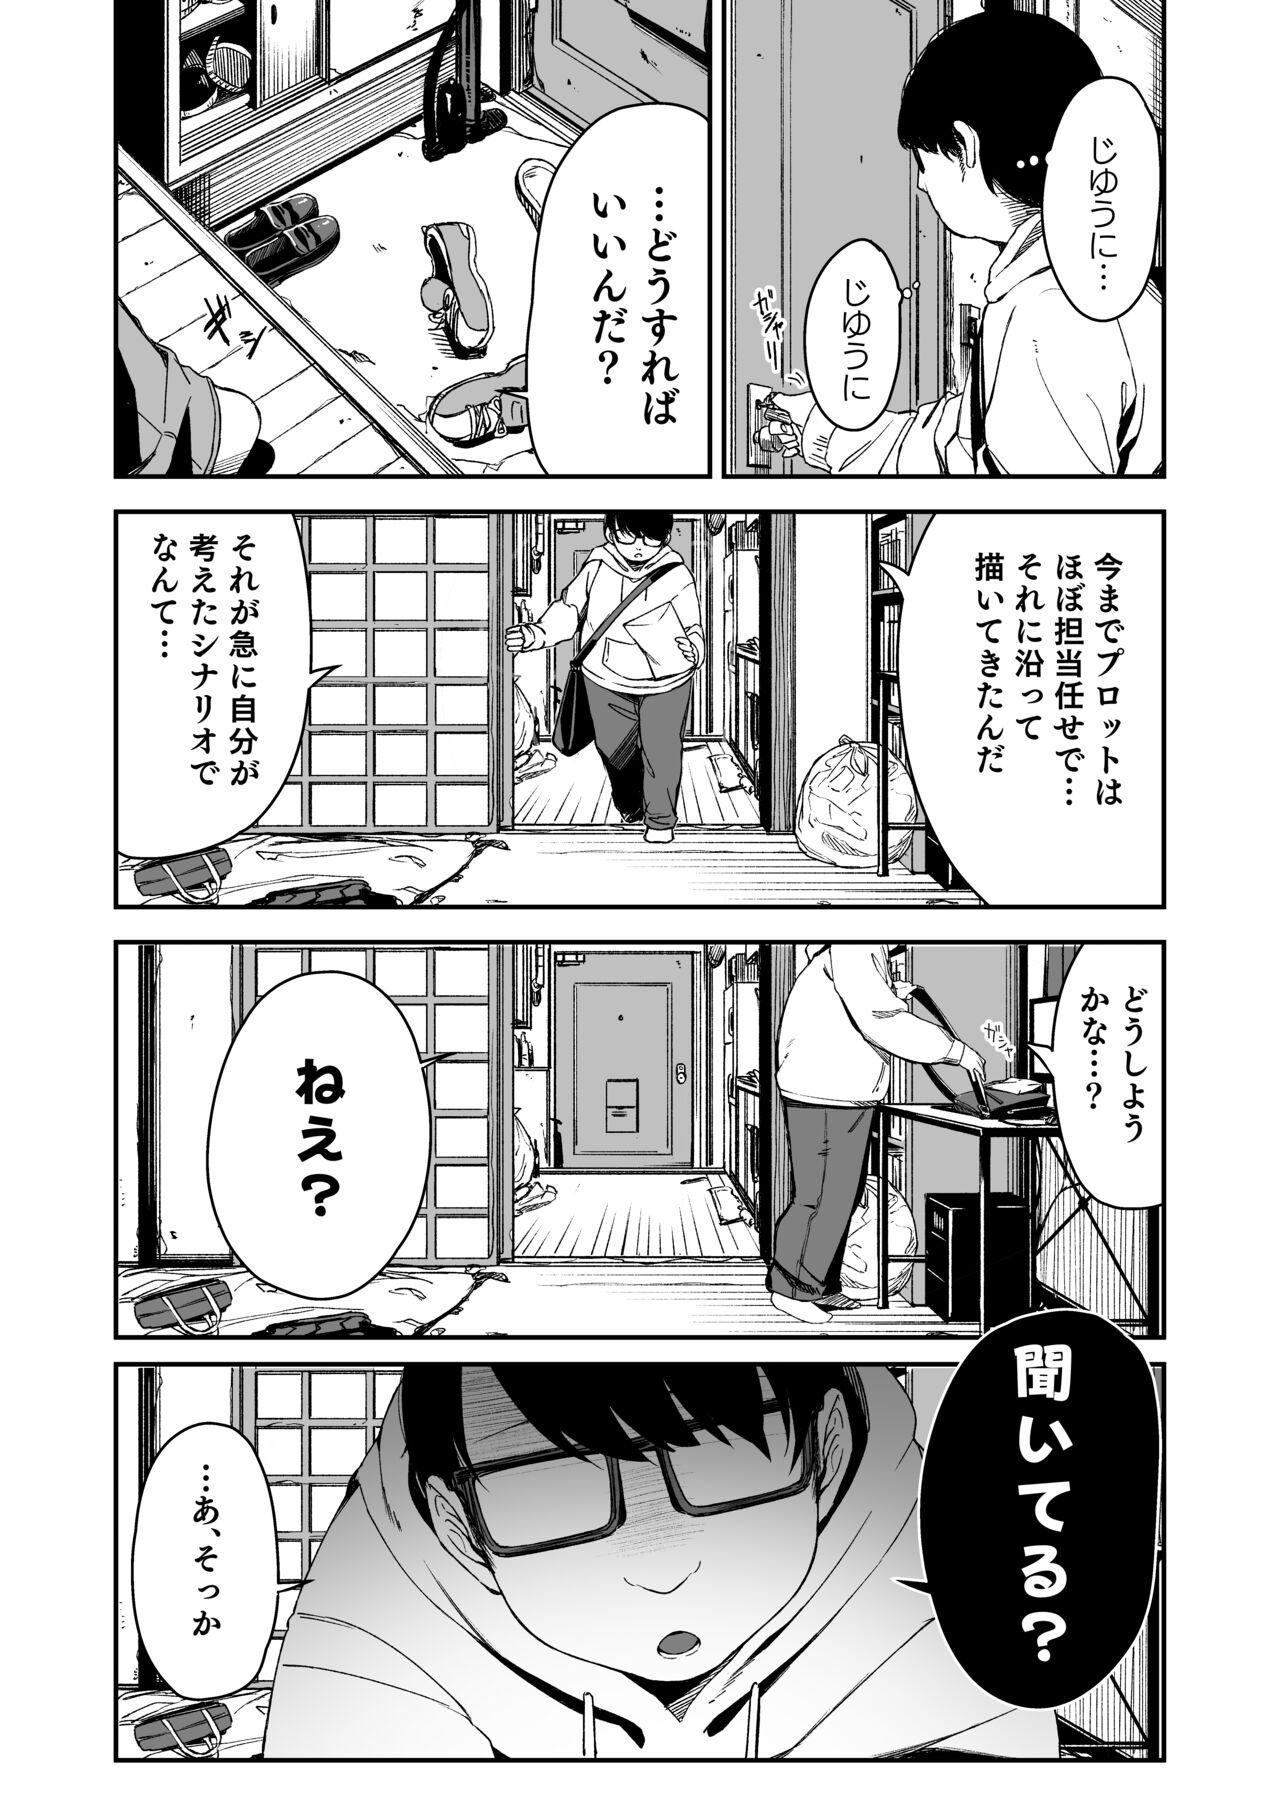 Do-M Shoujo wa, Manga no Naka de. 6